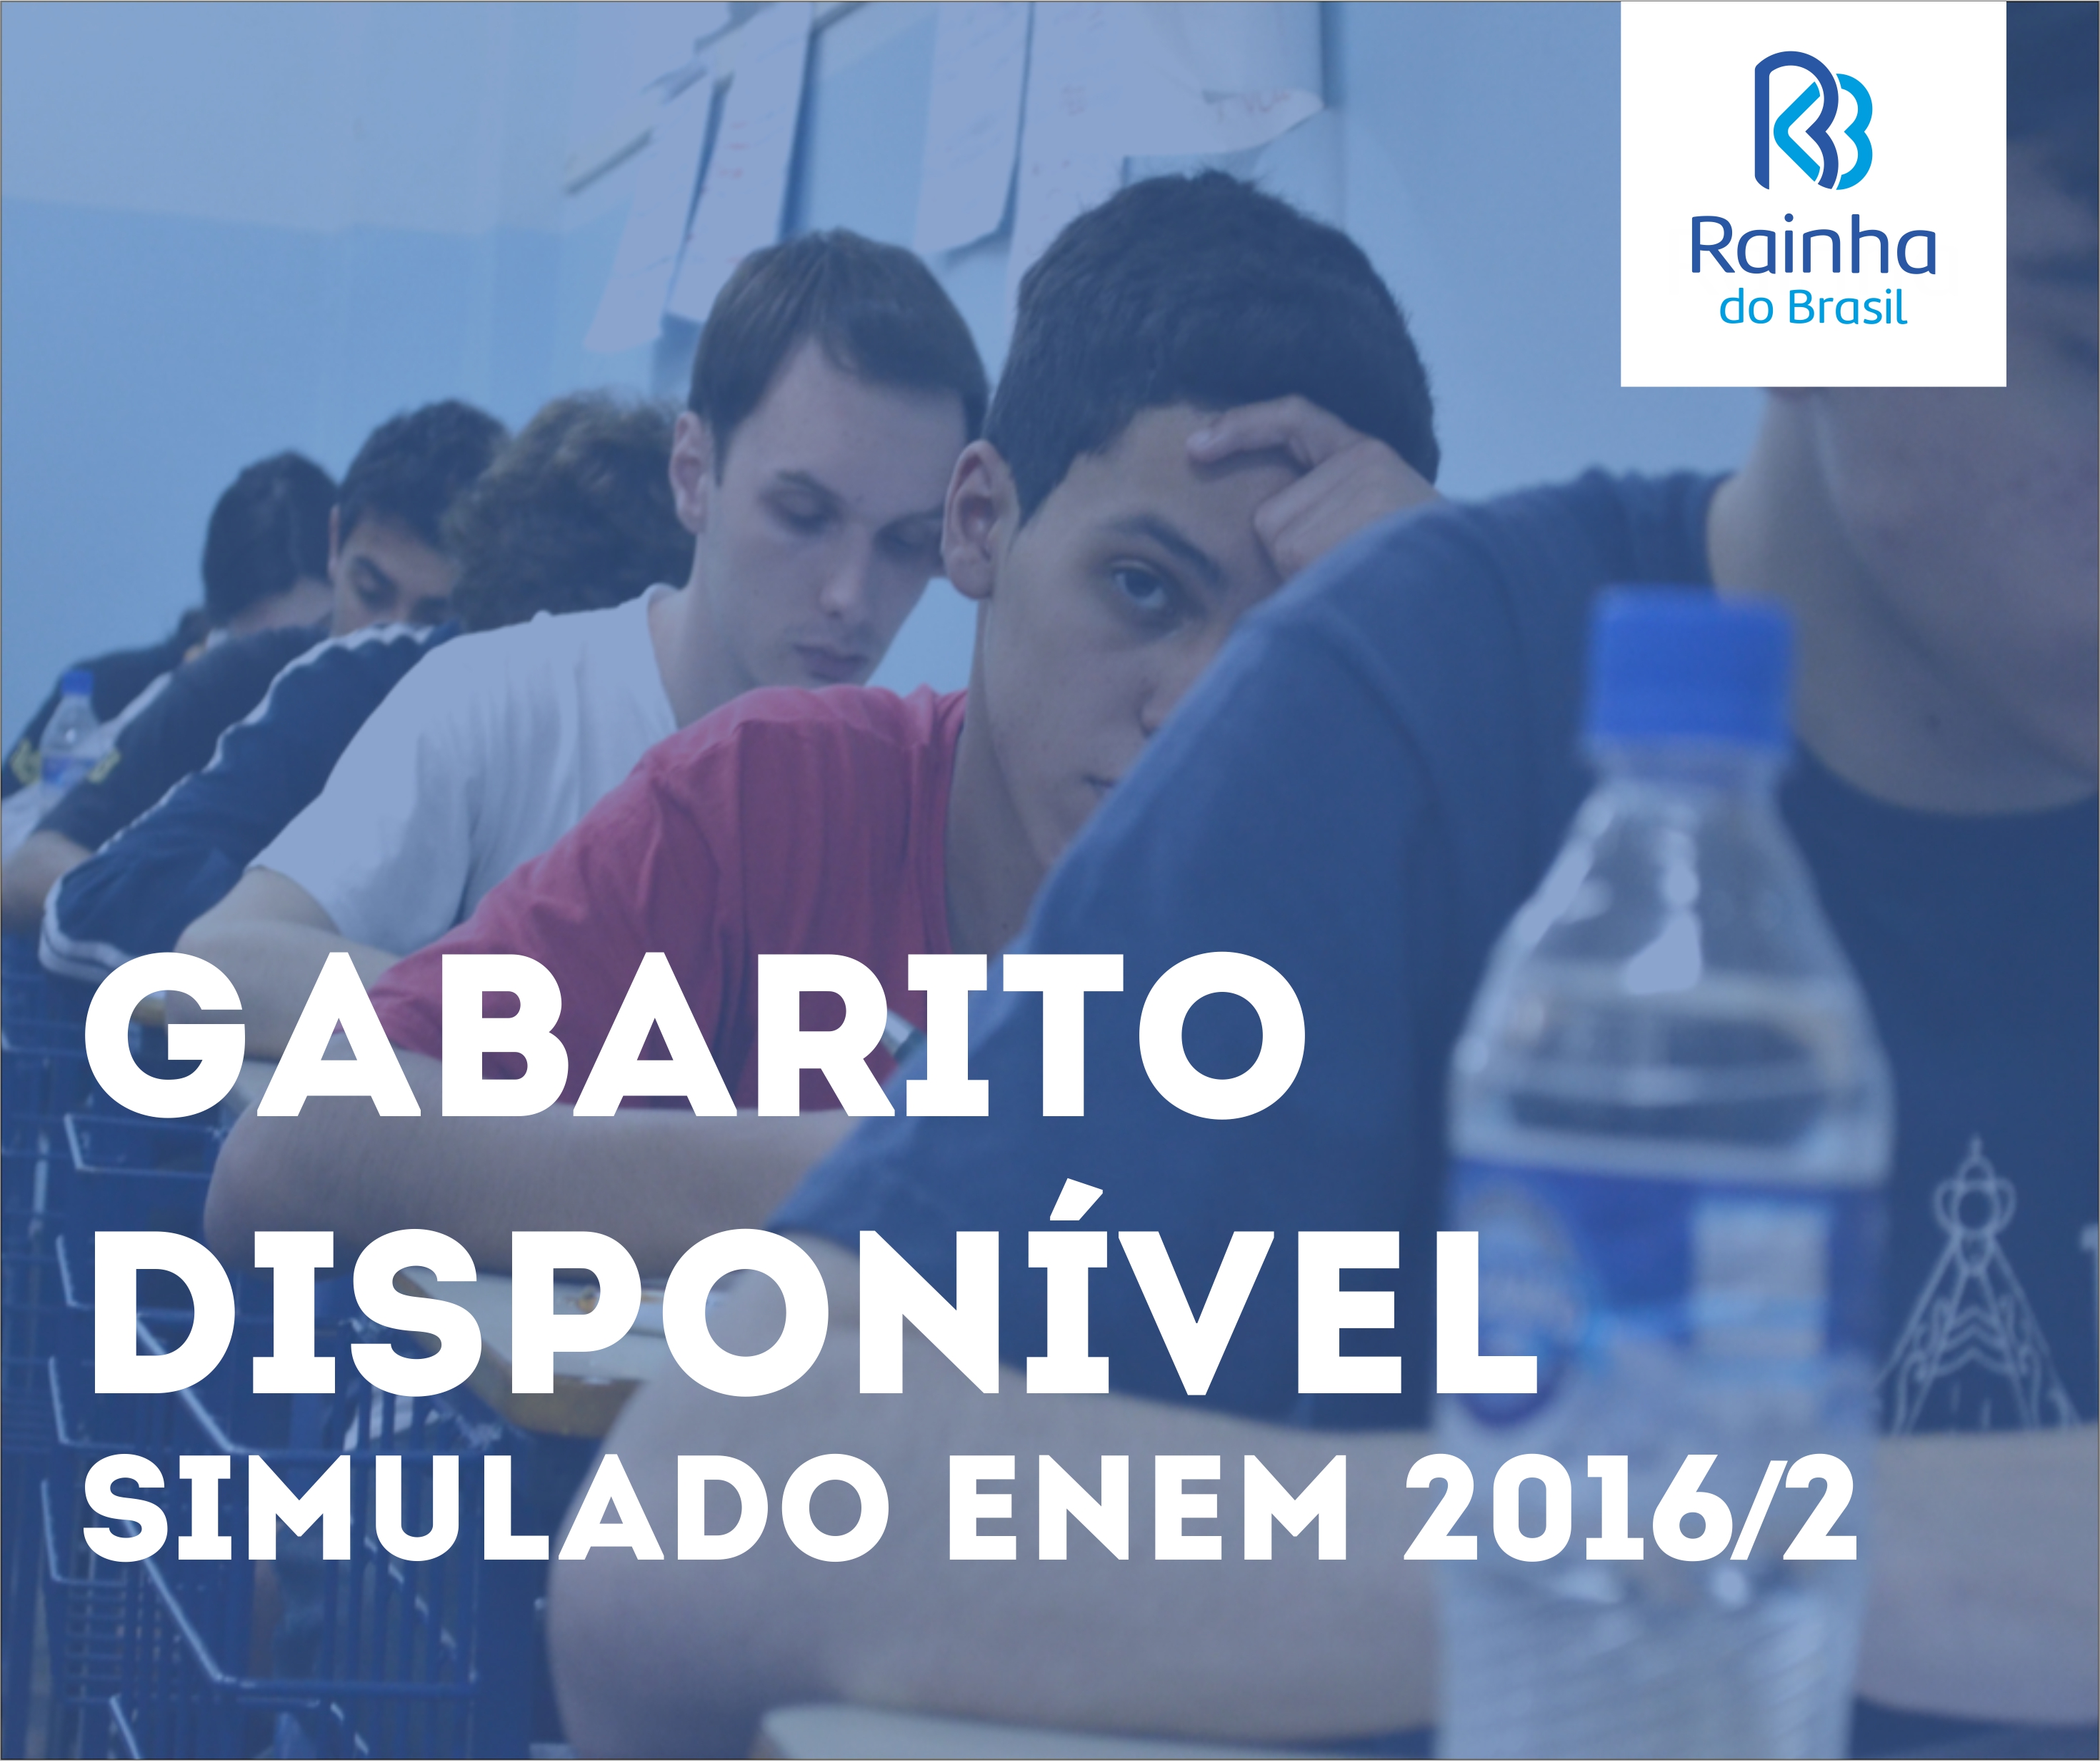 Gabarito simulado ENEM 2016/2